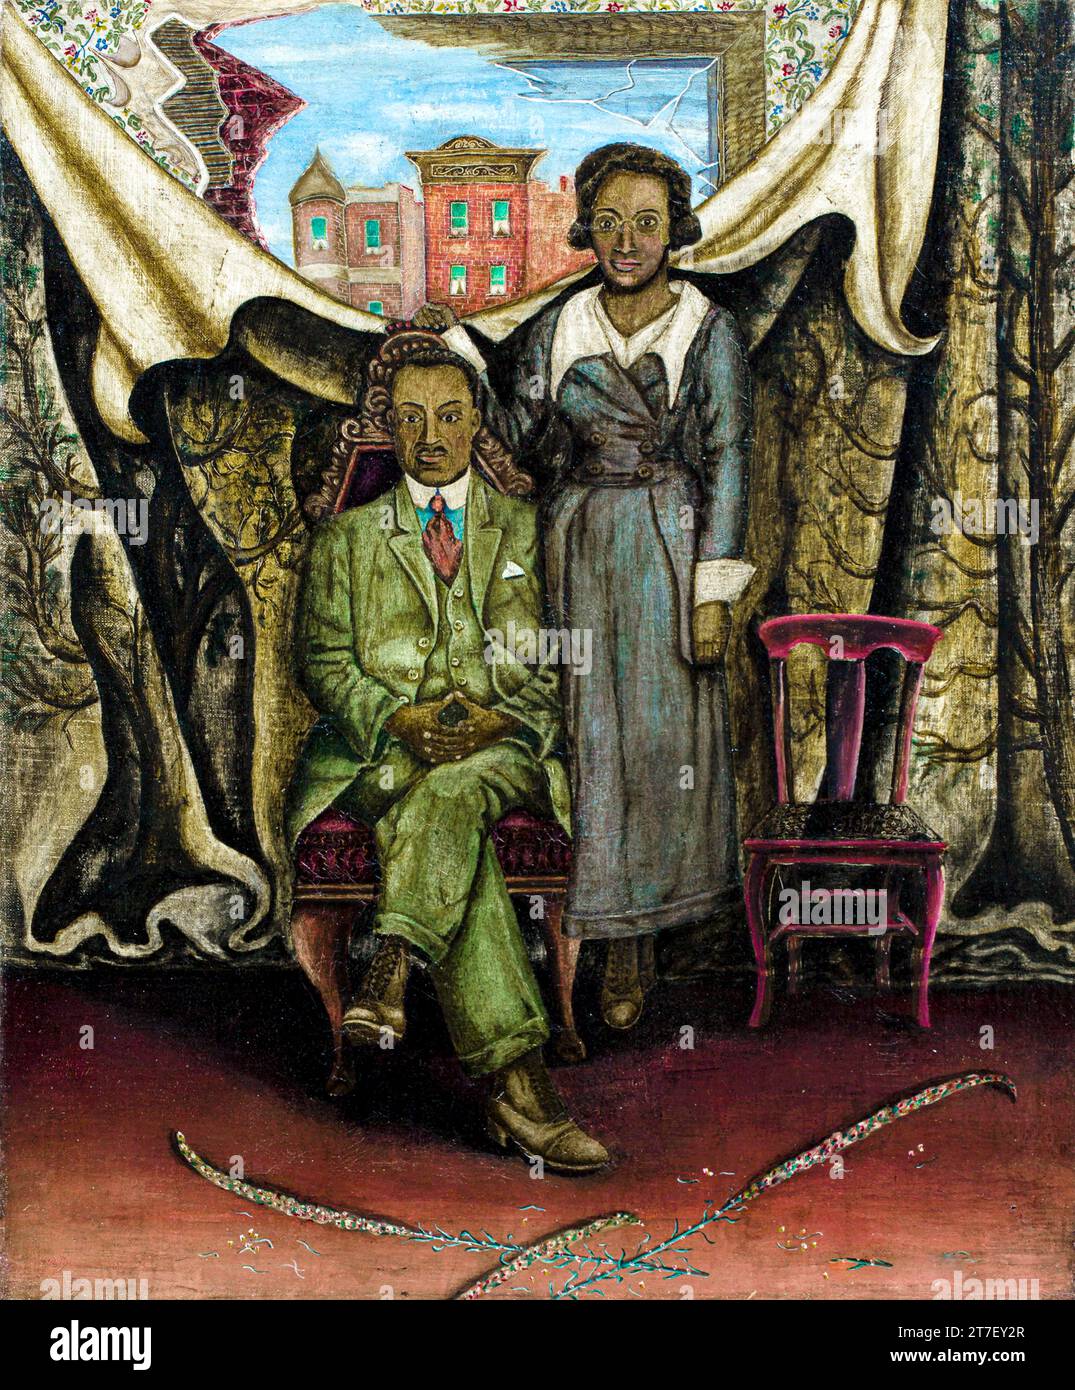 Vater und Mutter – tintype more: Original gemeinfreies Bild aus dem Saint Louis Art Museum Stockfoto